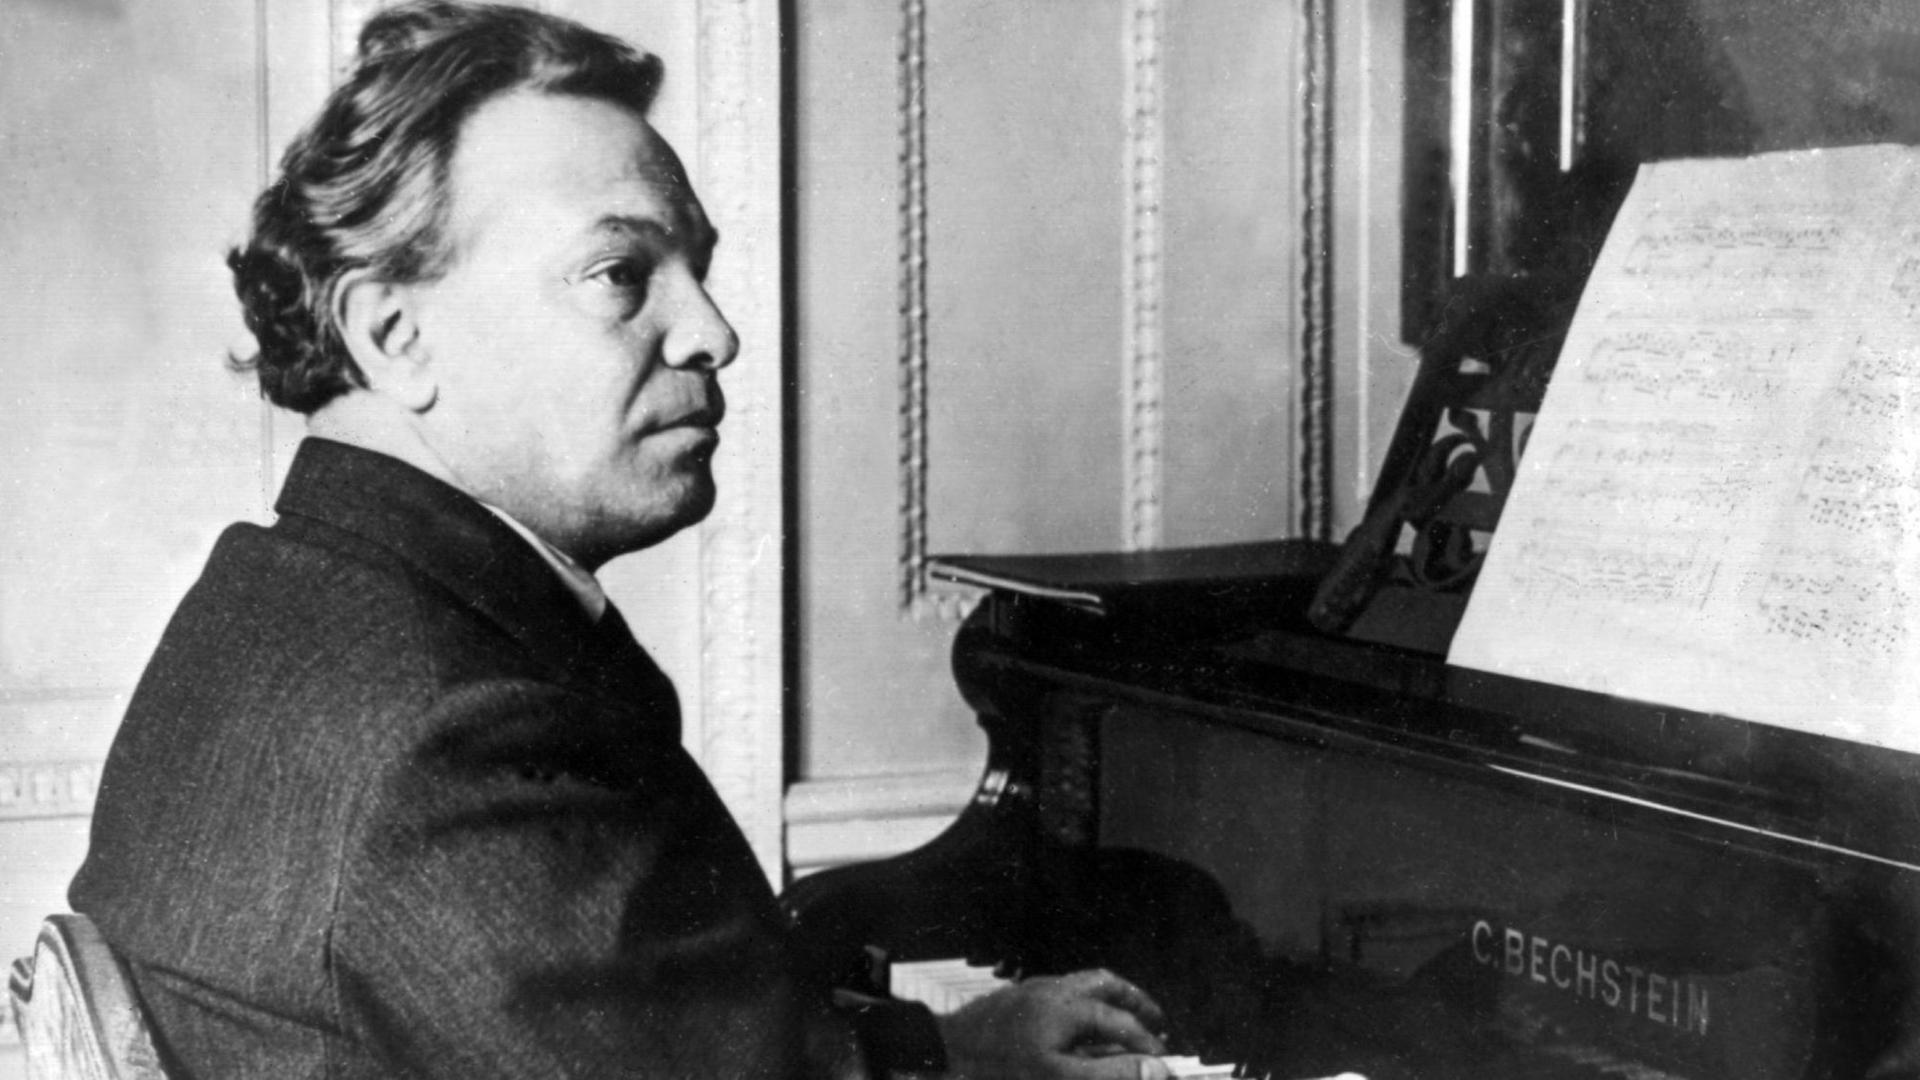 Der italienische Komponist Ottorino Respighi in einer zeitgenössischen Aufnahme. Er wurde am 9. Juli 1879 in Bologna geboren und verstarb am 18. April 1936 in Rom.